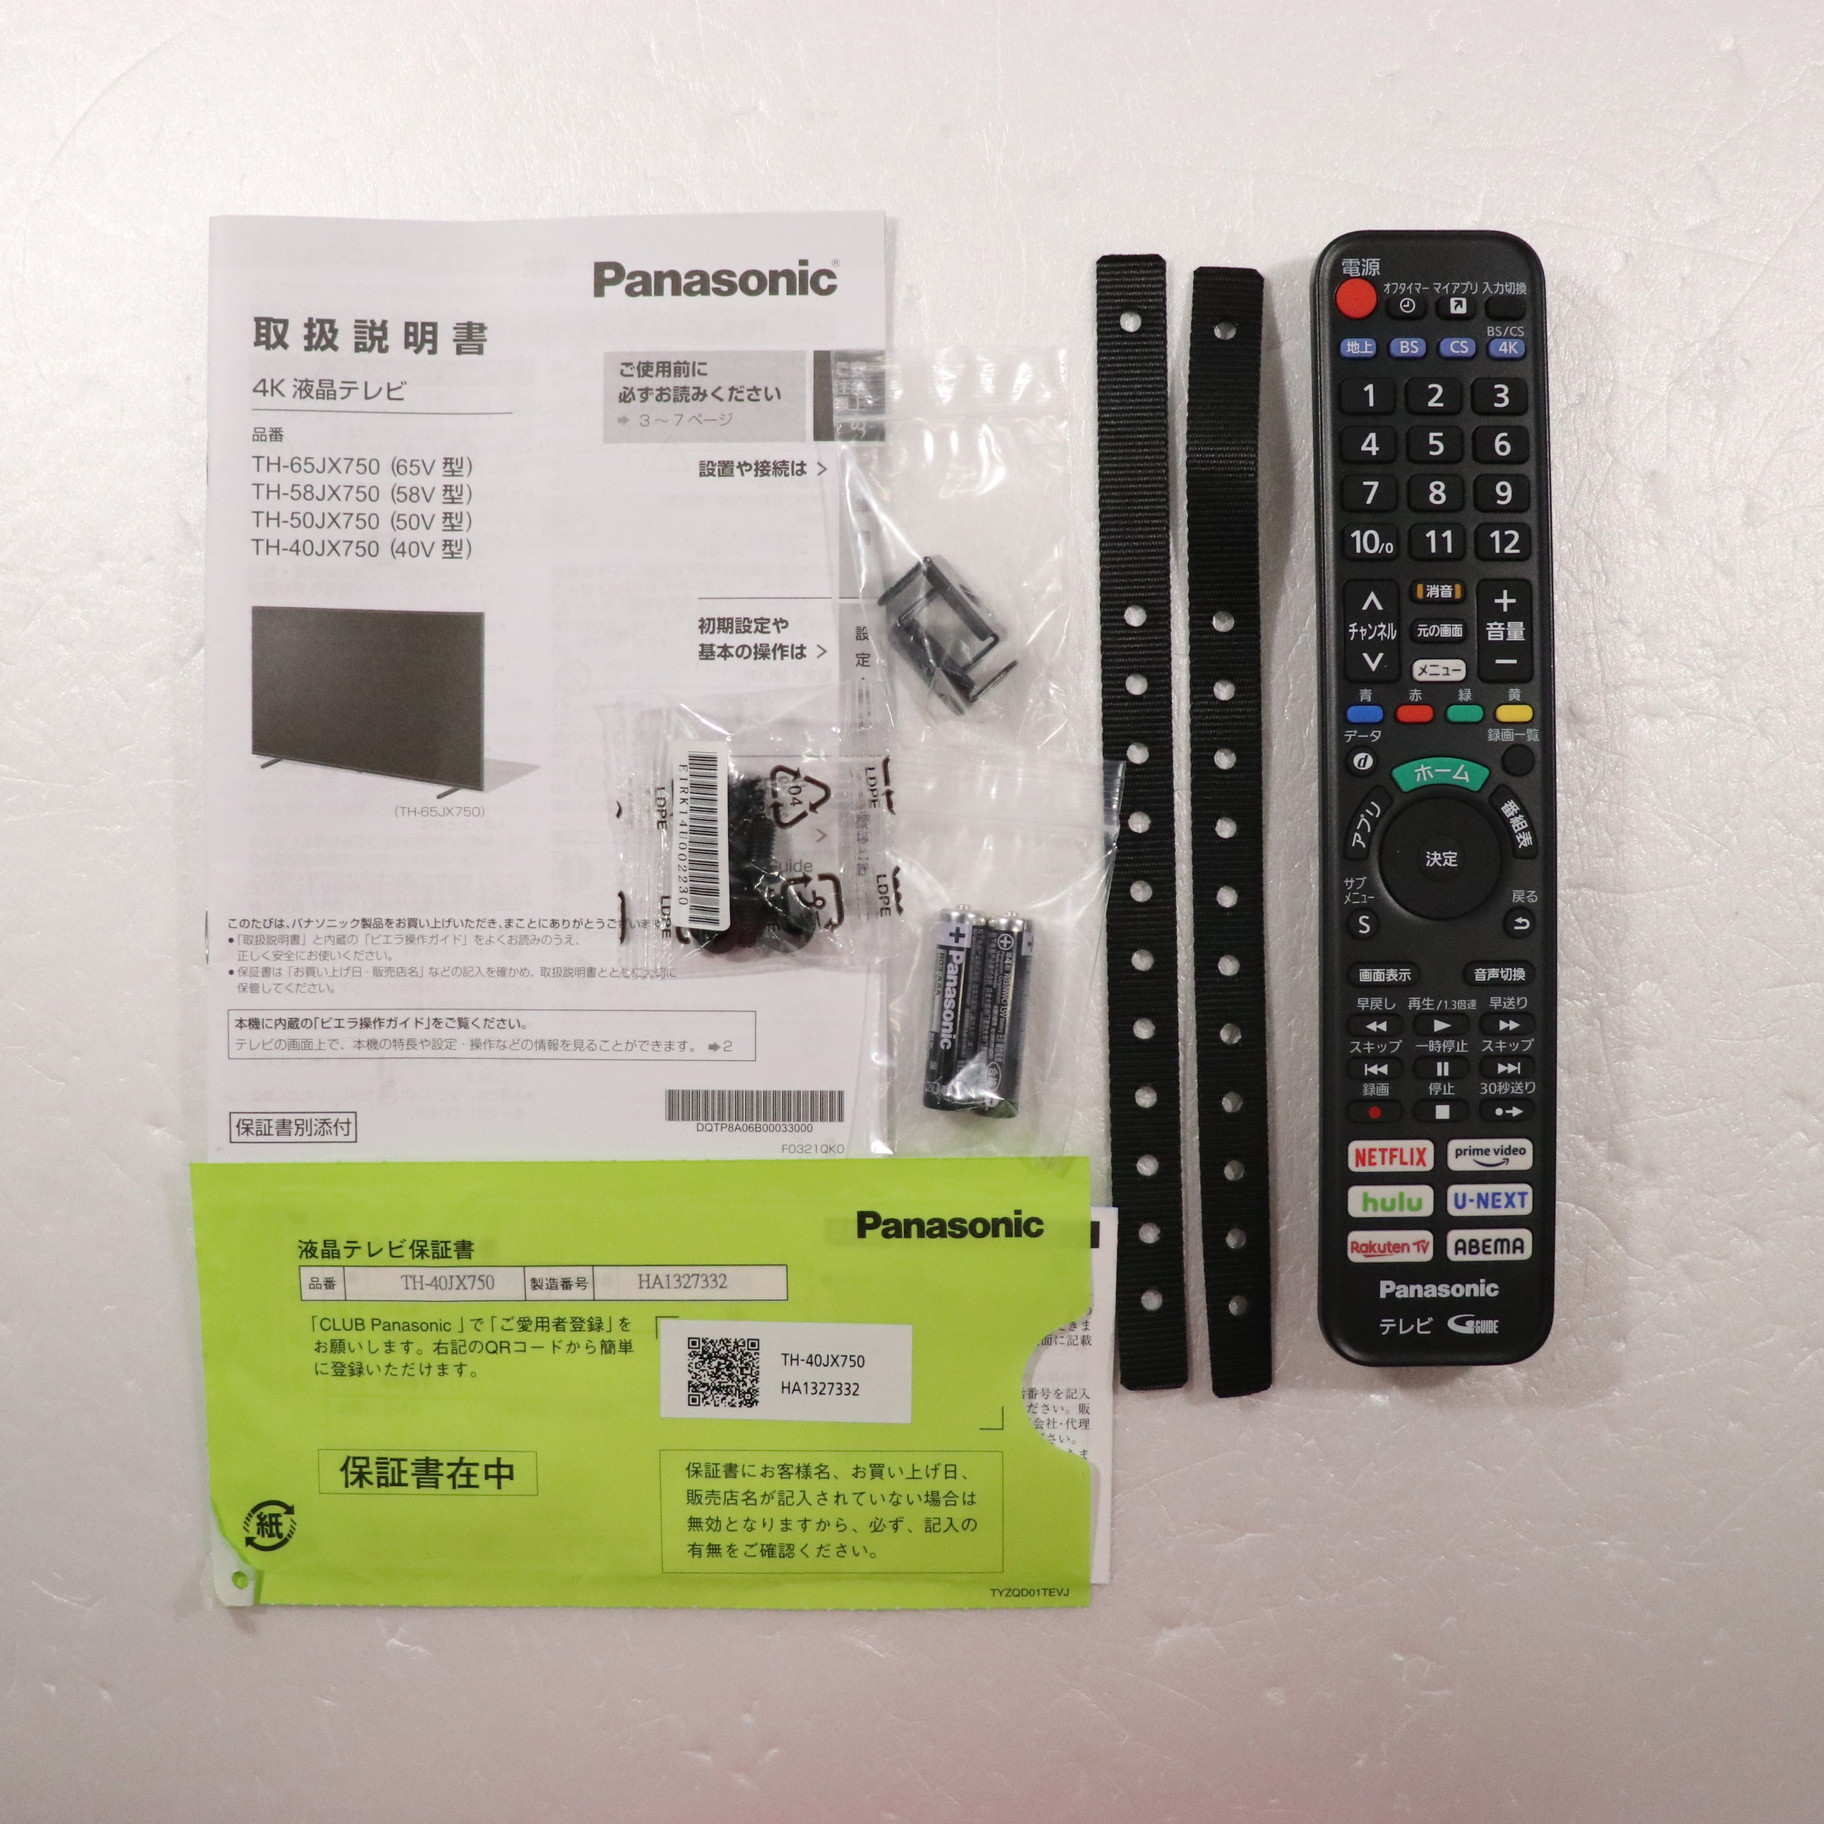 パナソニックテレビ 4k TH-40Jx750 - テレビ/映像機器